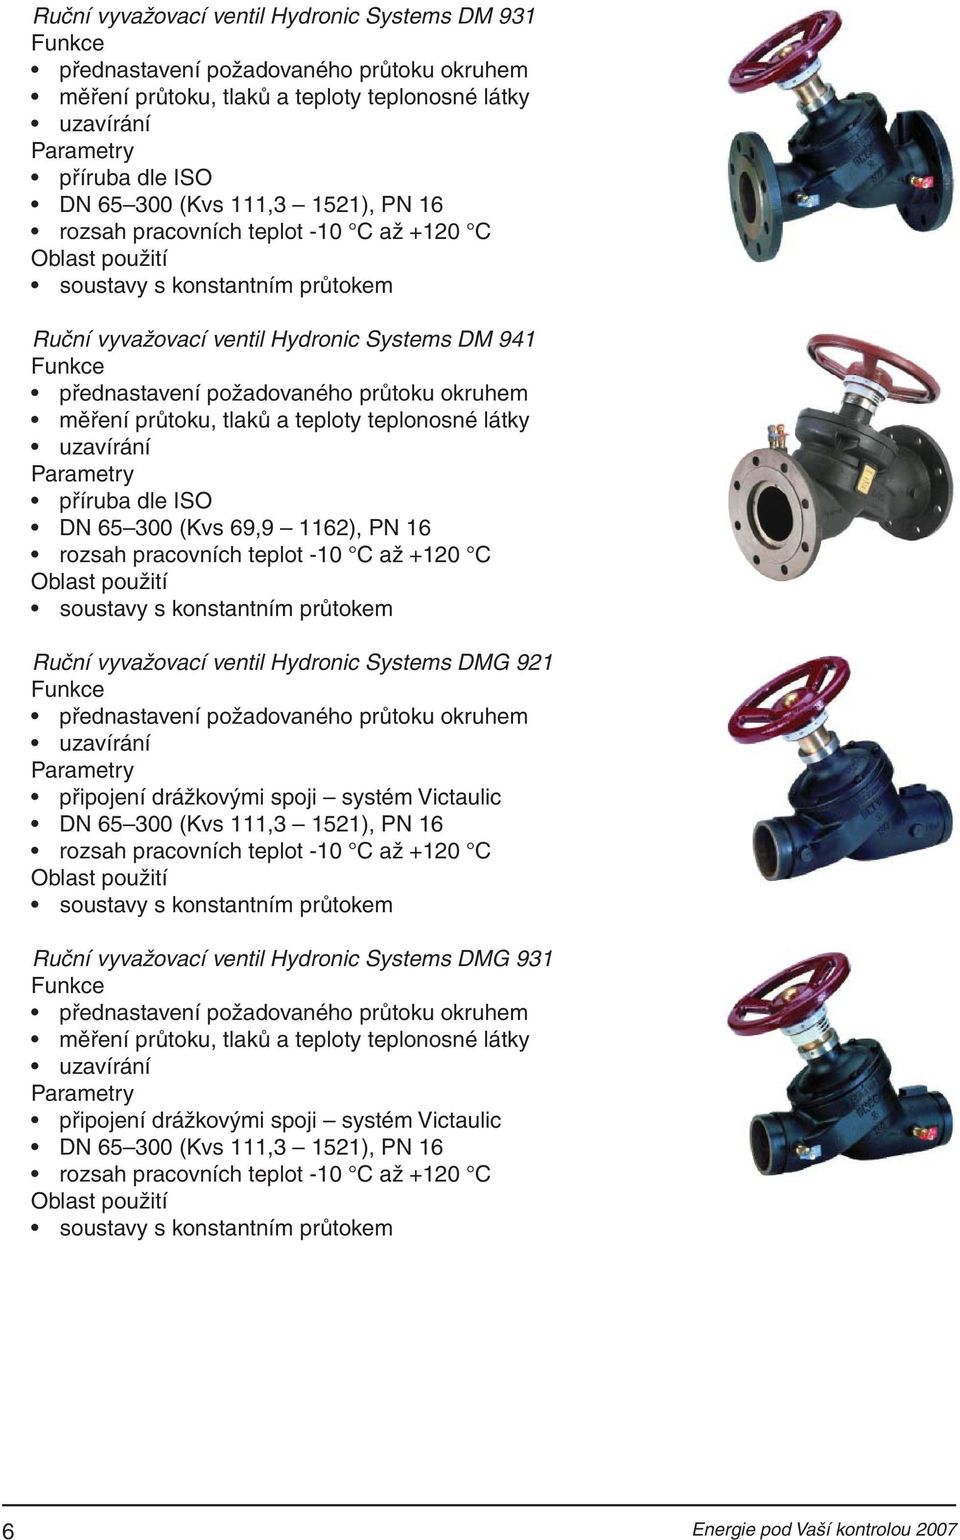 dle ISO DN 65 300 (Kvs 69,9 1162), PN 16 rozsah pracovních teplot -10 C až +120 C Ruční vyvažovací ventil Hydronic Systems DMG 921 přednastavení požadovaného průtoku okruhem uzavírání připojení